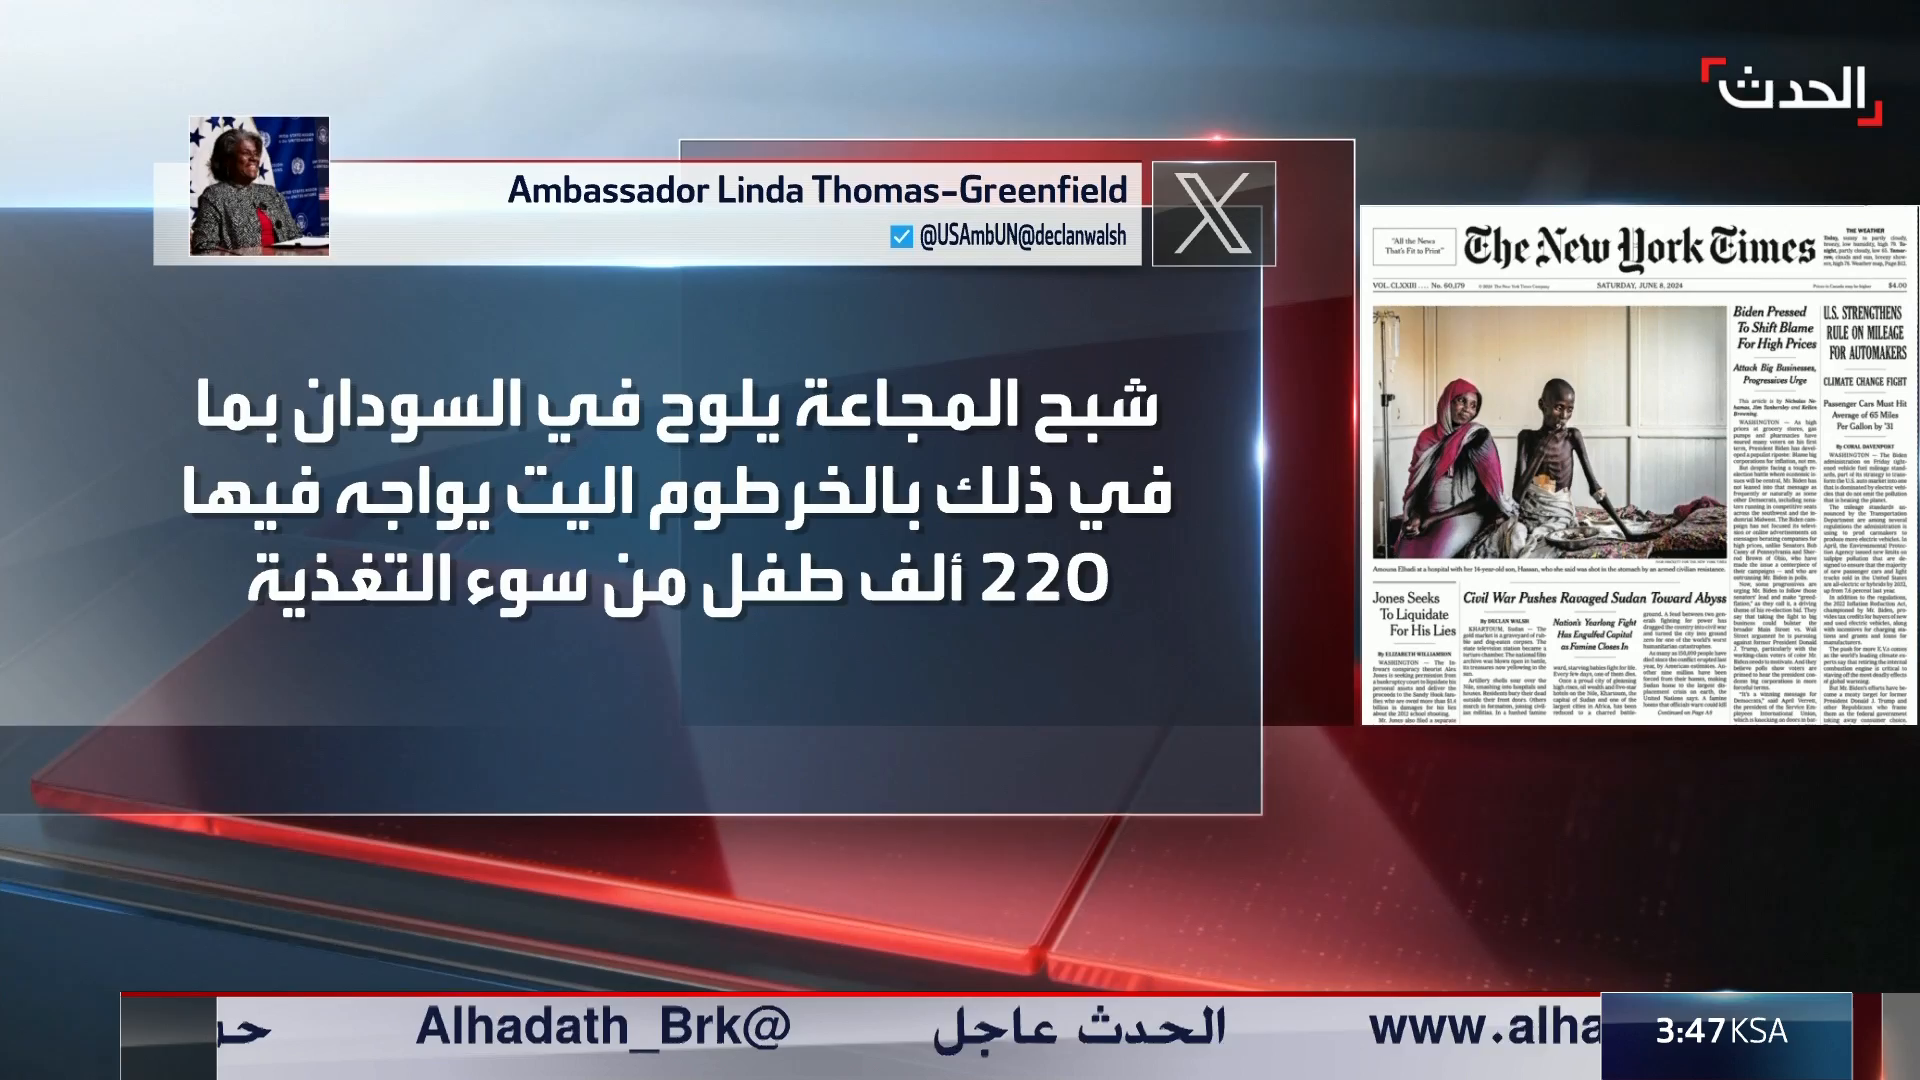 Watch Al Arabiya Al Hadath